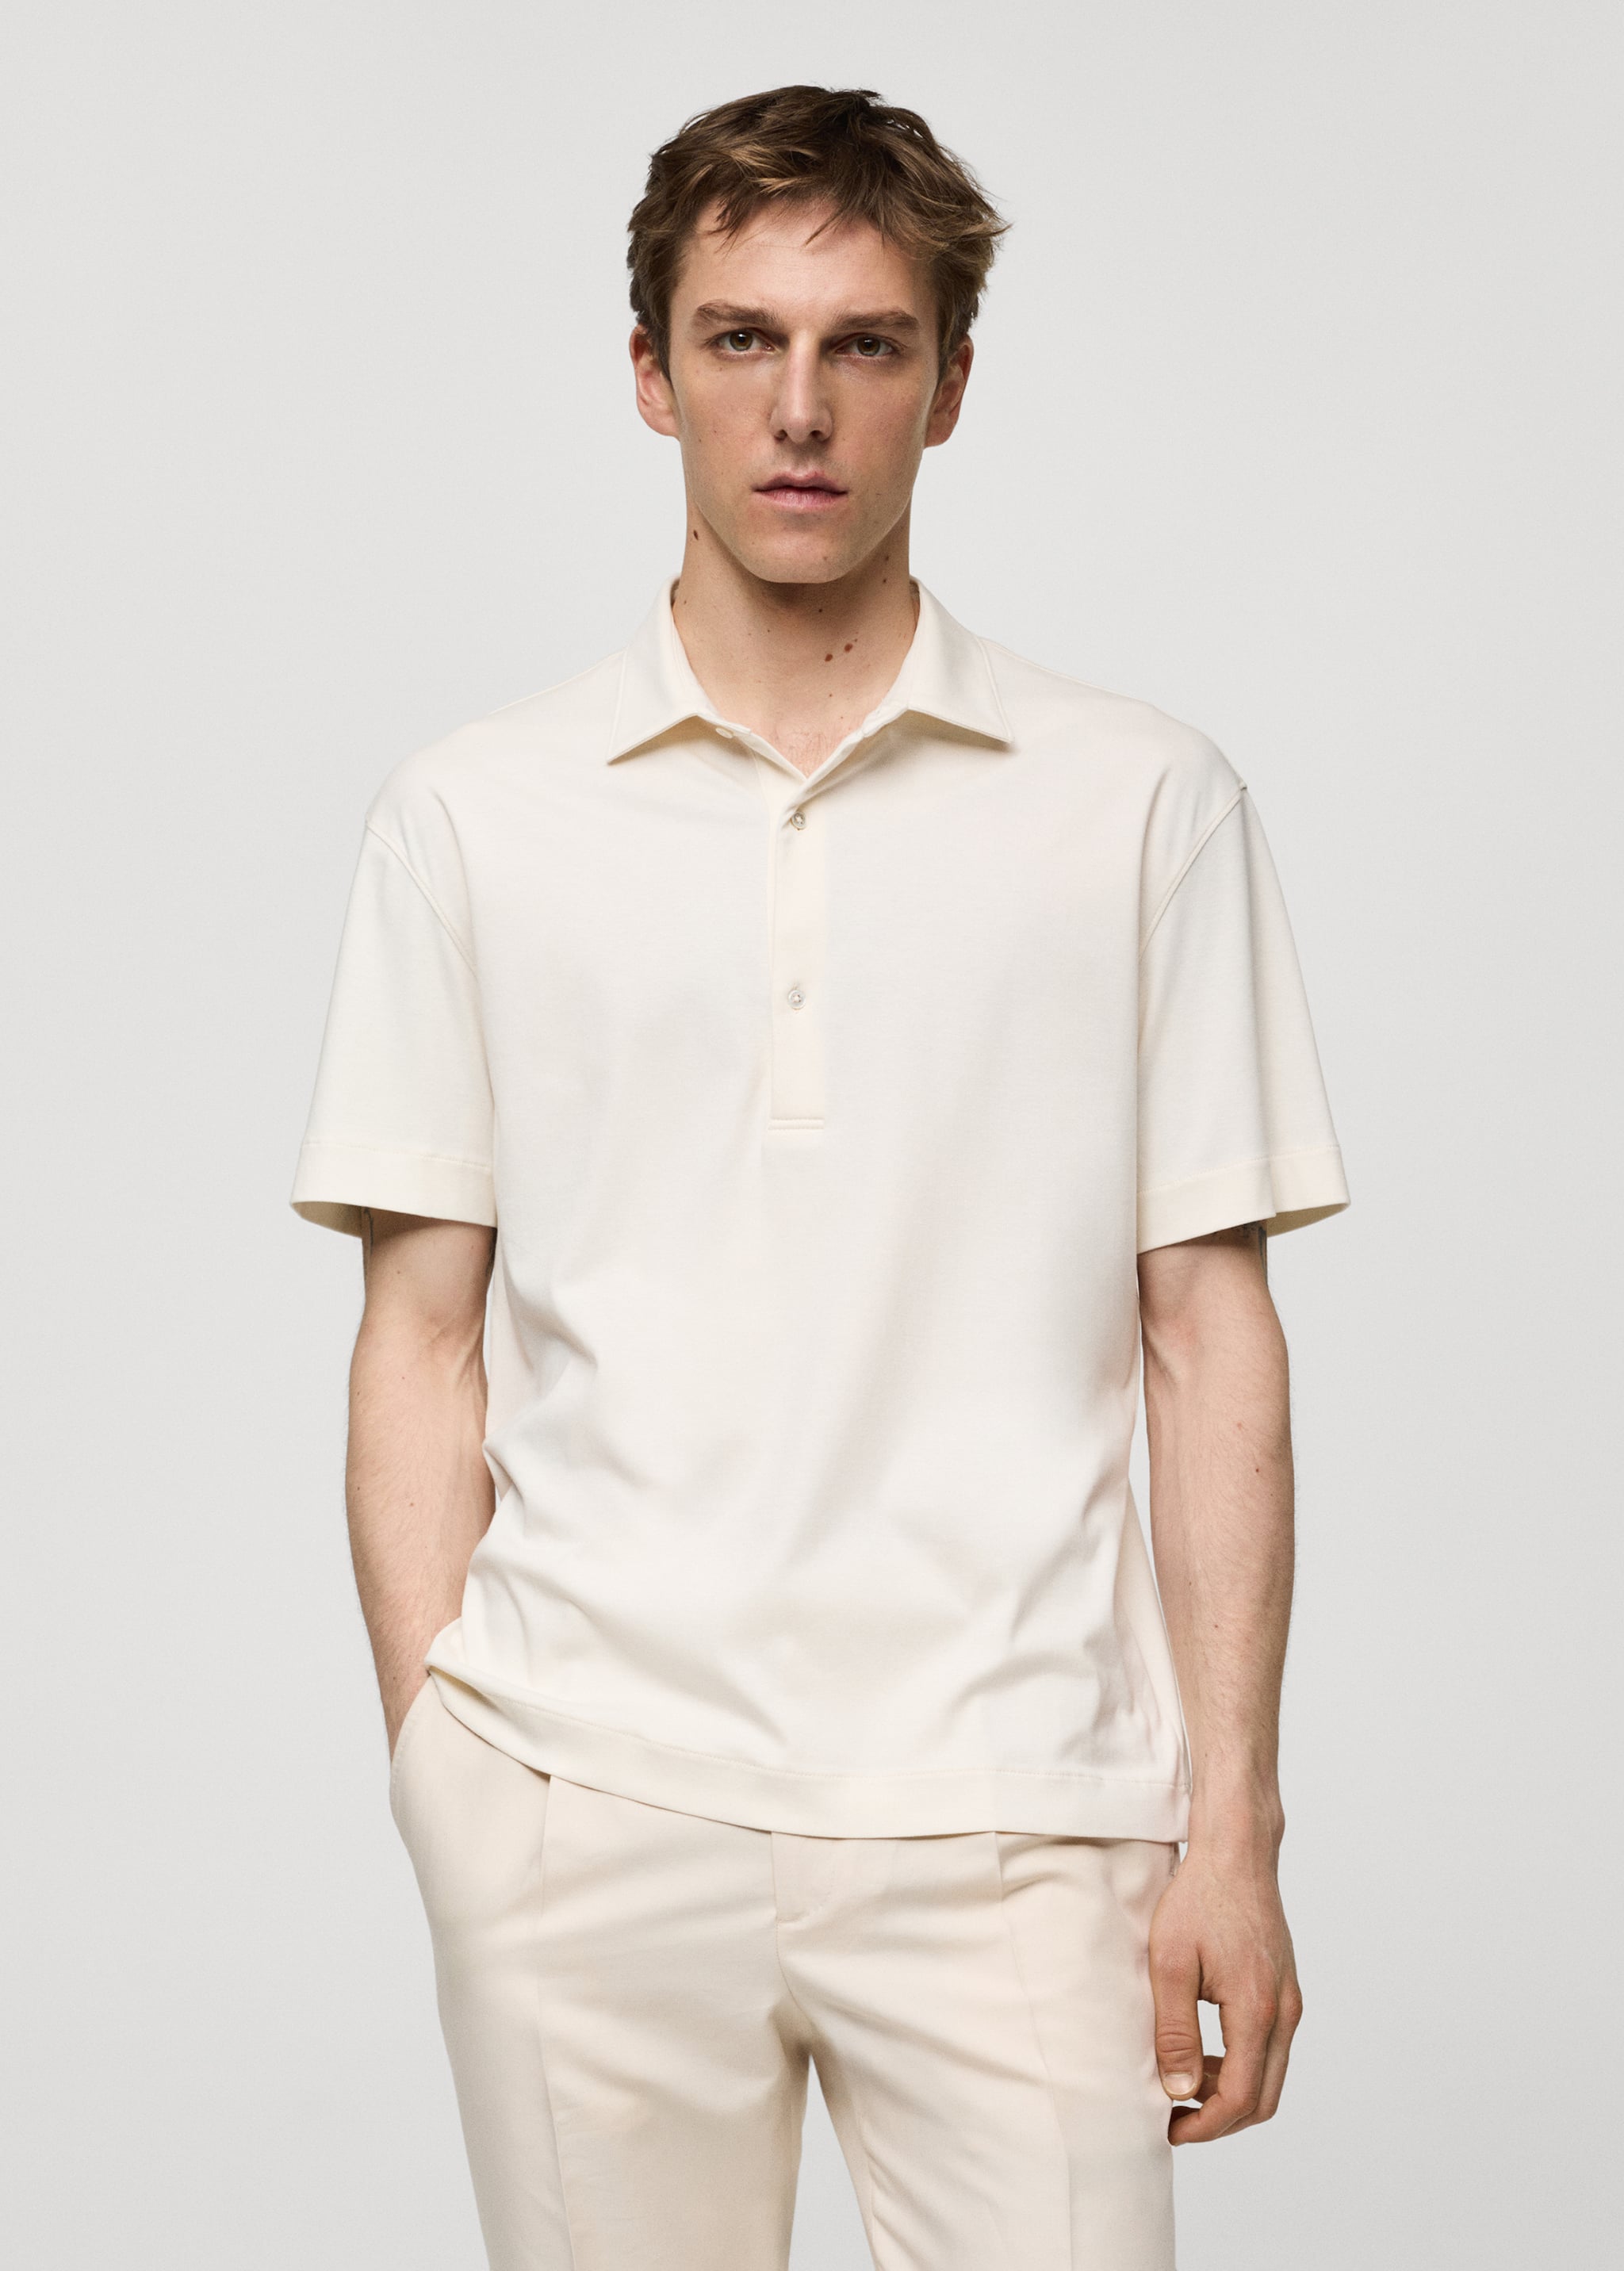 100% cotton slim-fit polo shirt - Medium plane